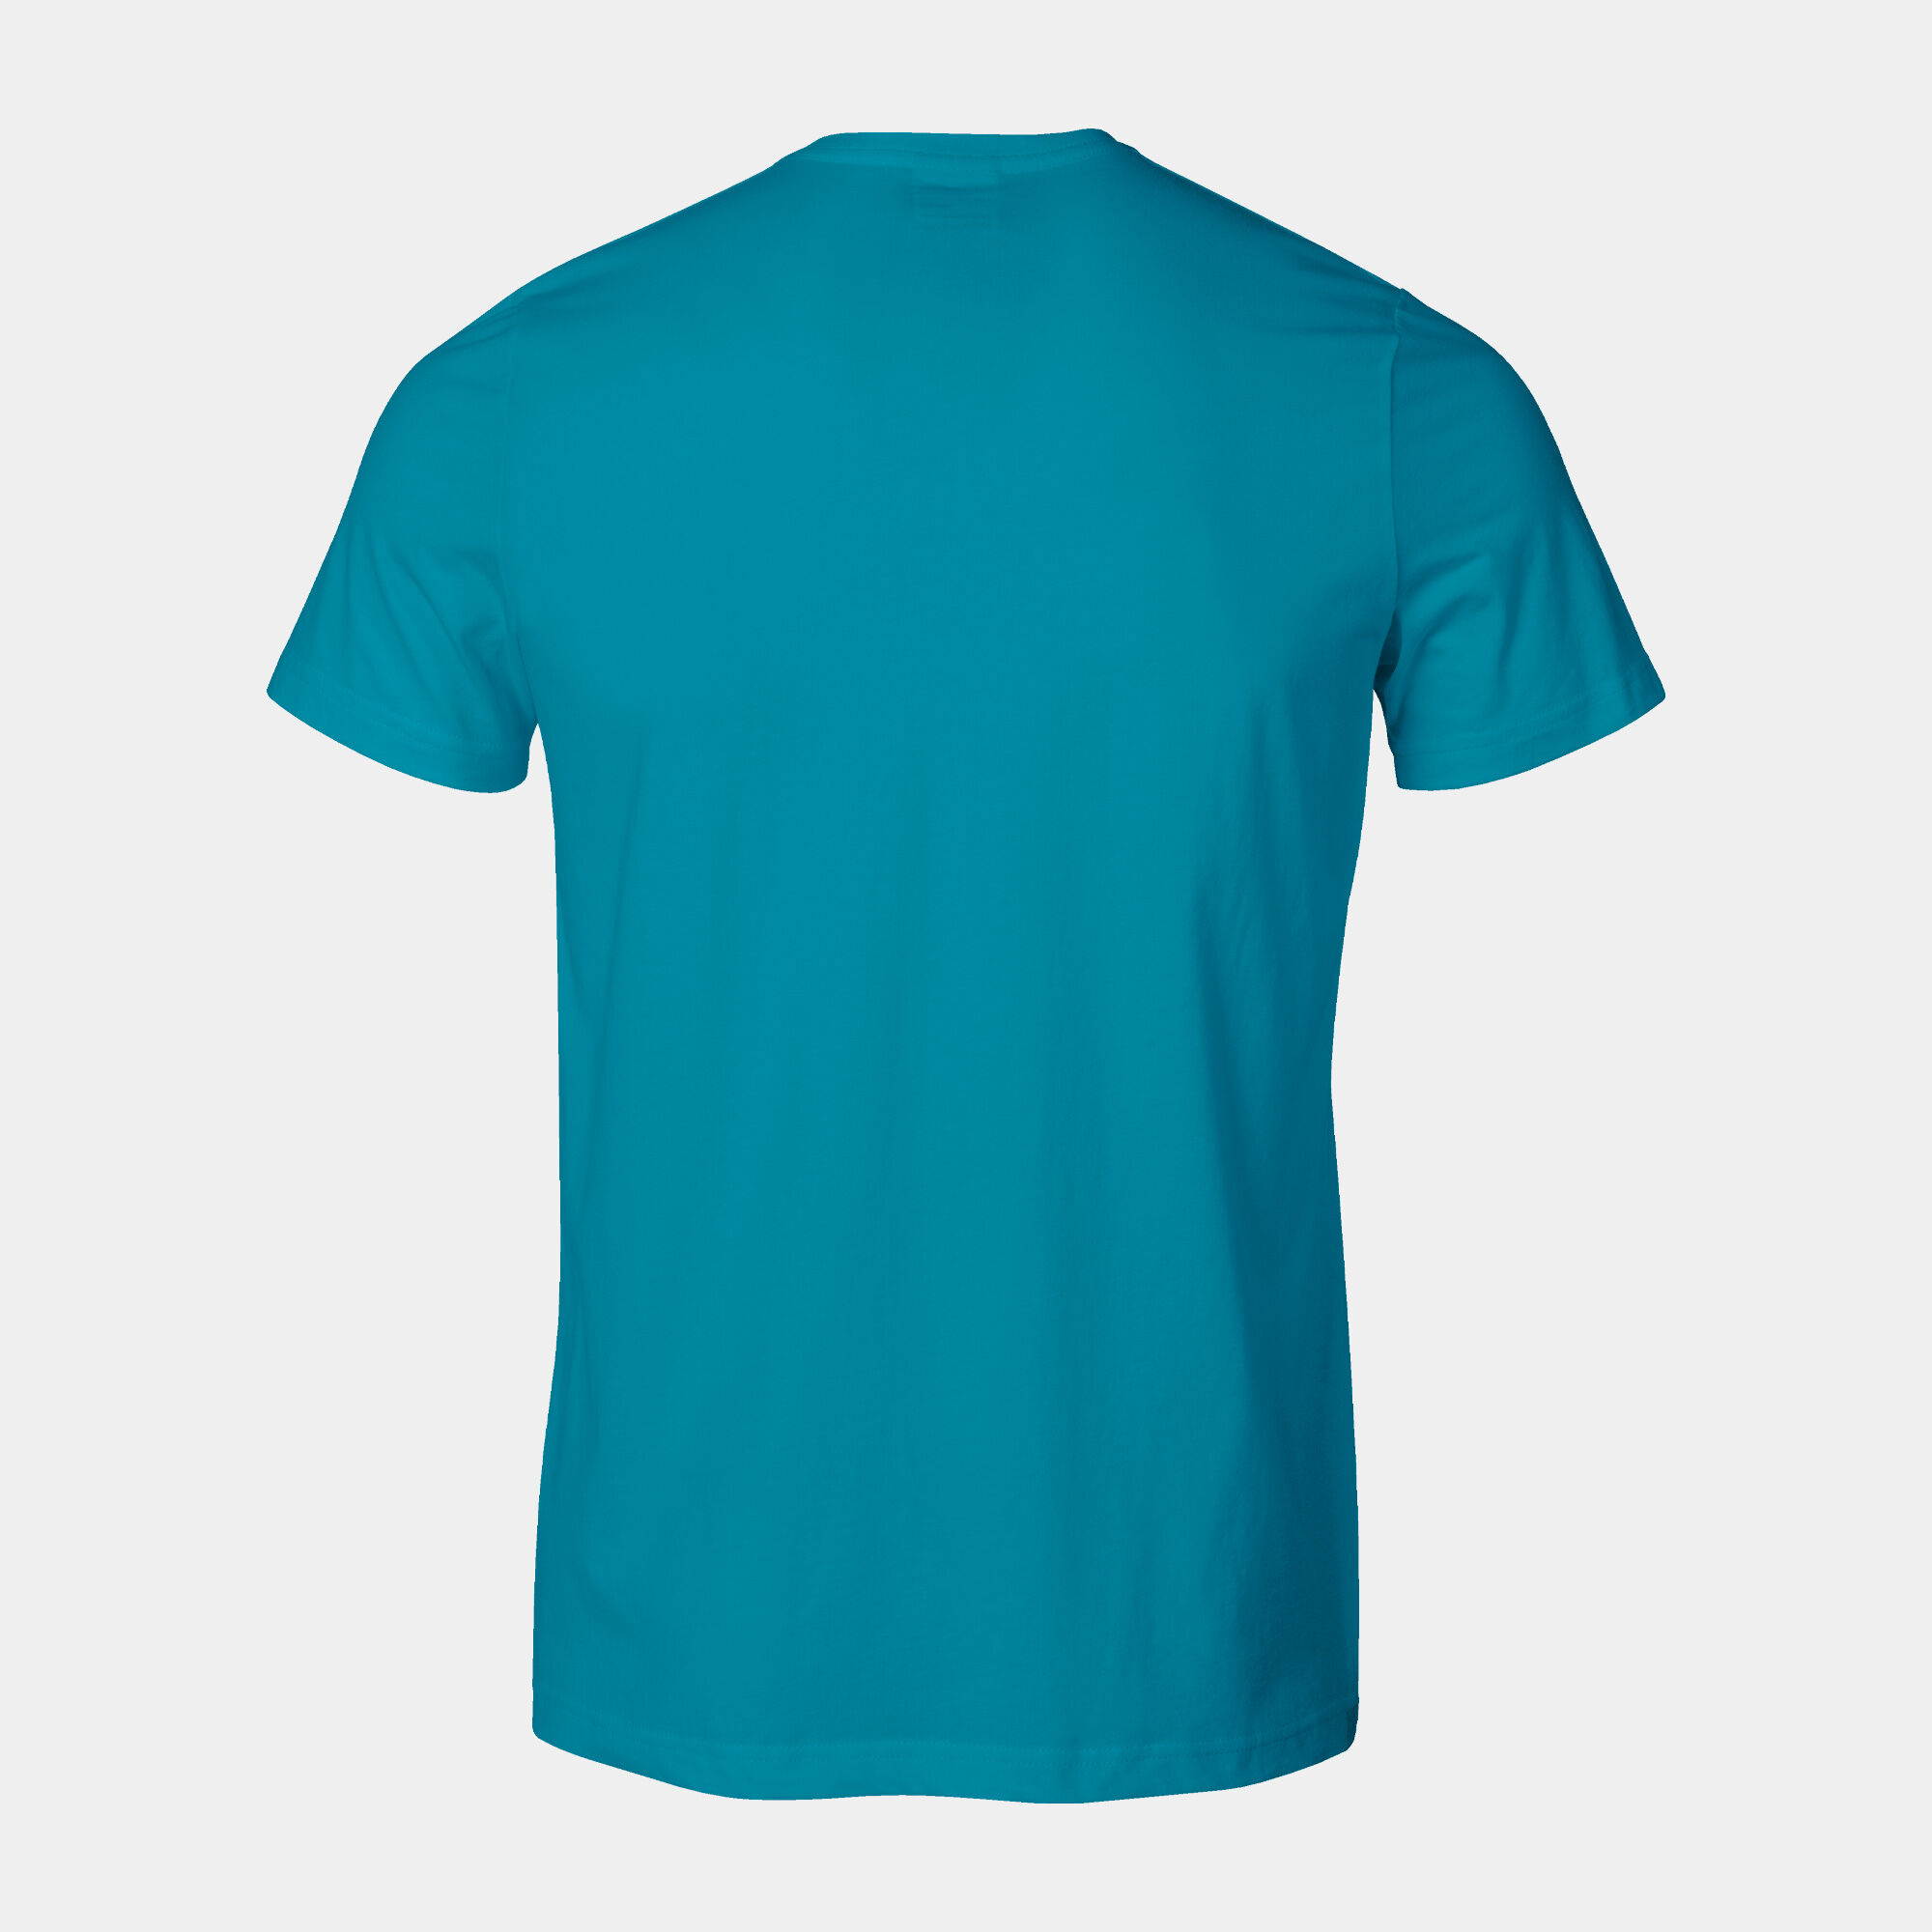 Shirt short sleeve man Versalles blue